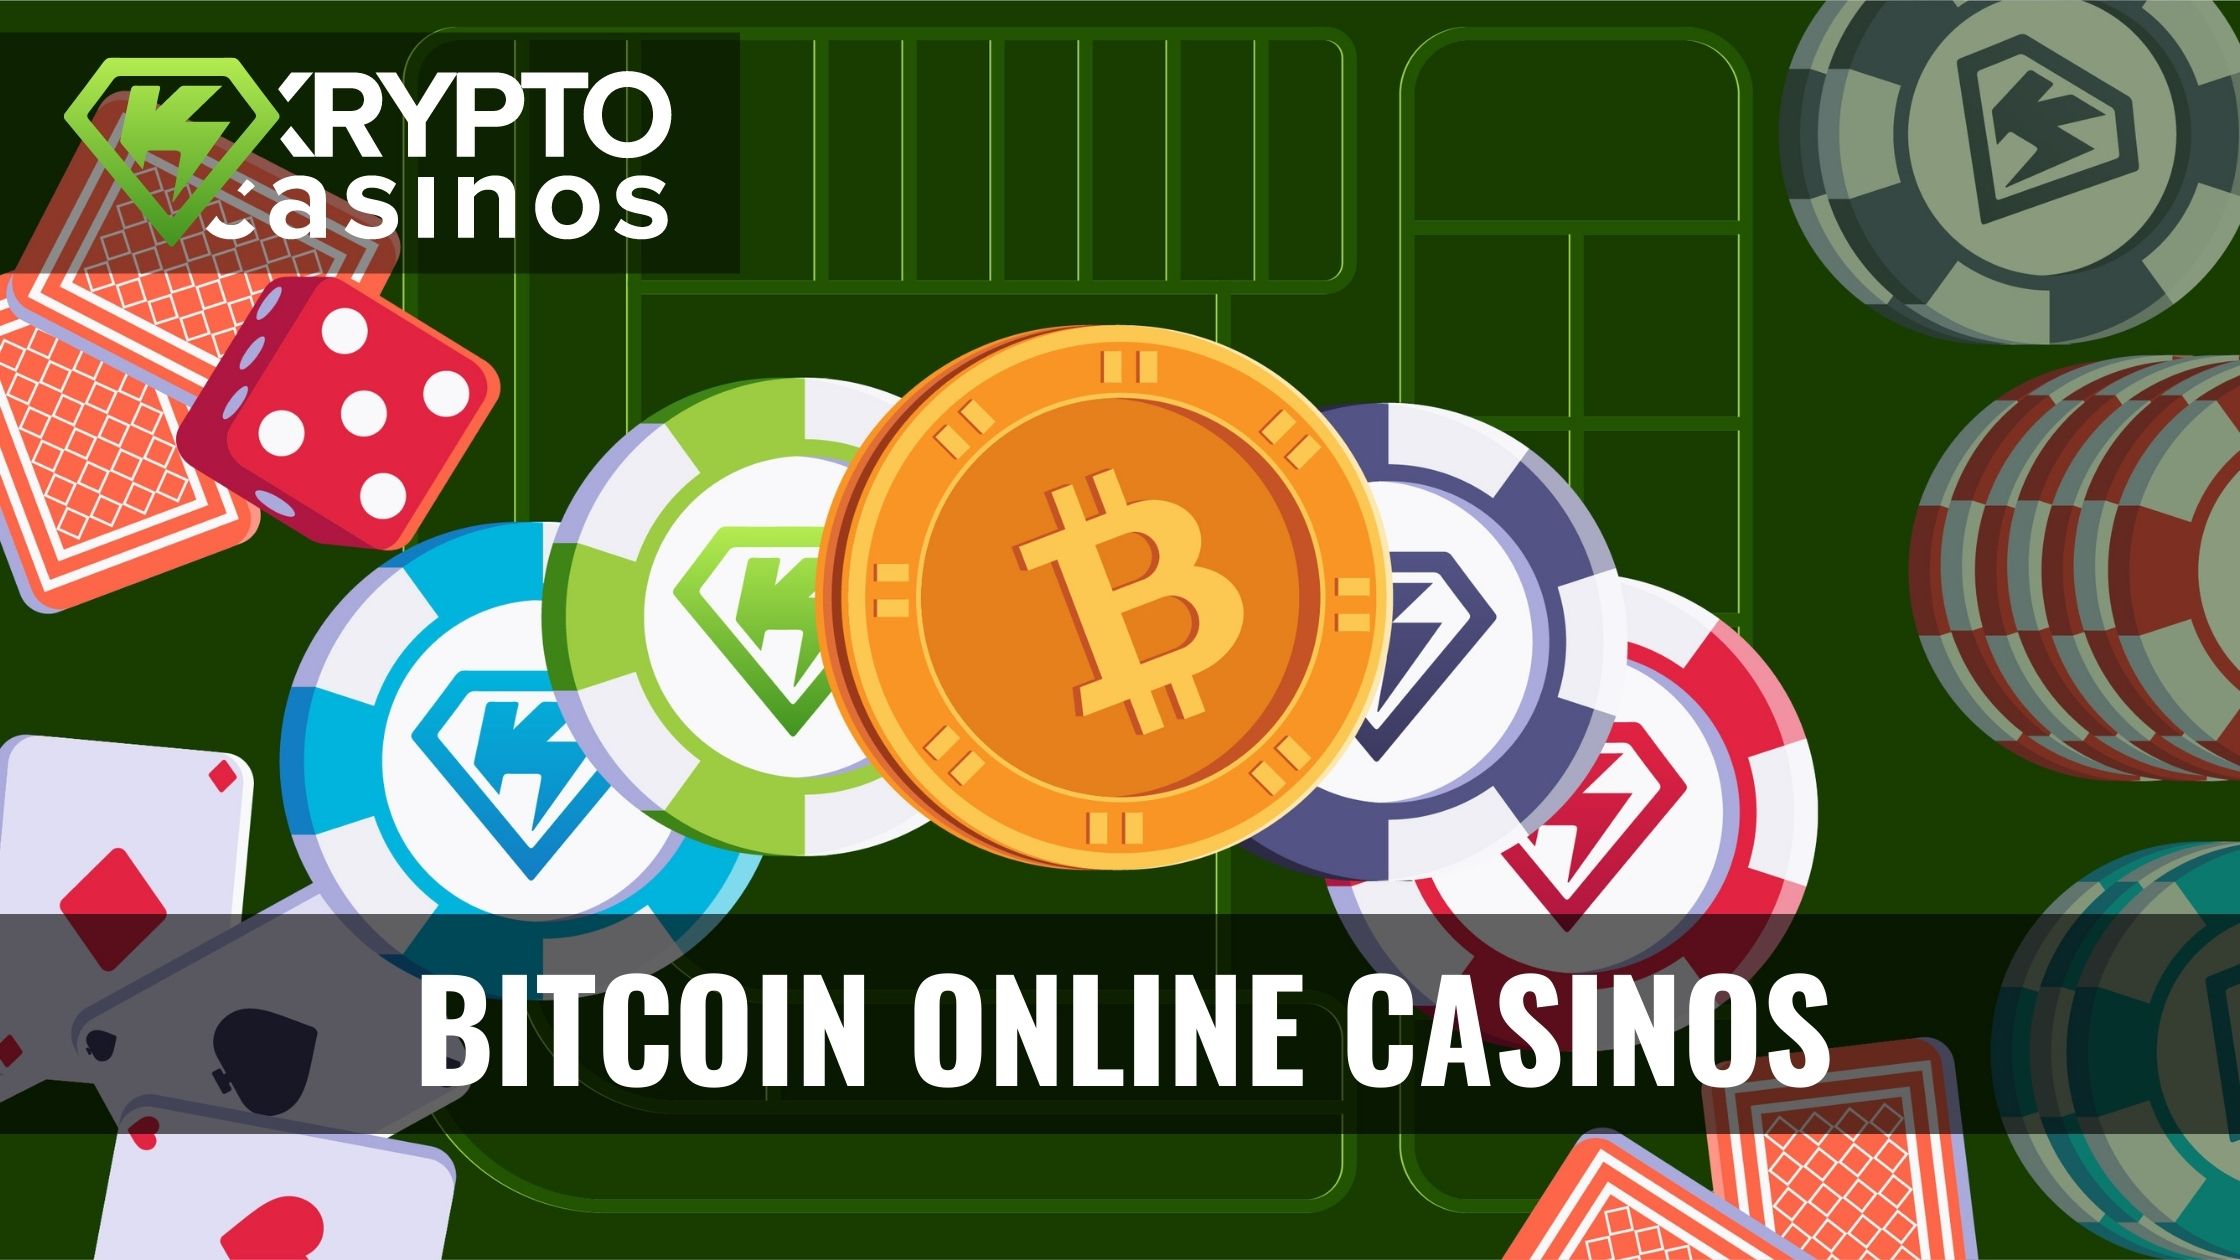 Die 3 wirklich offensichtlichen Möglichkeiten, Bitcoin Casino Anbieter besser zu machen, als Sie es jemals getan haben